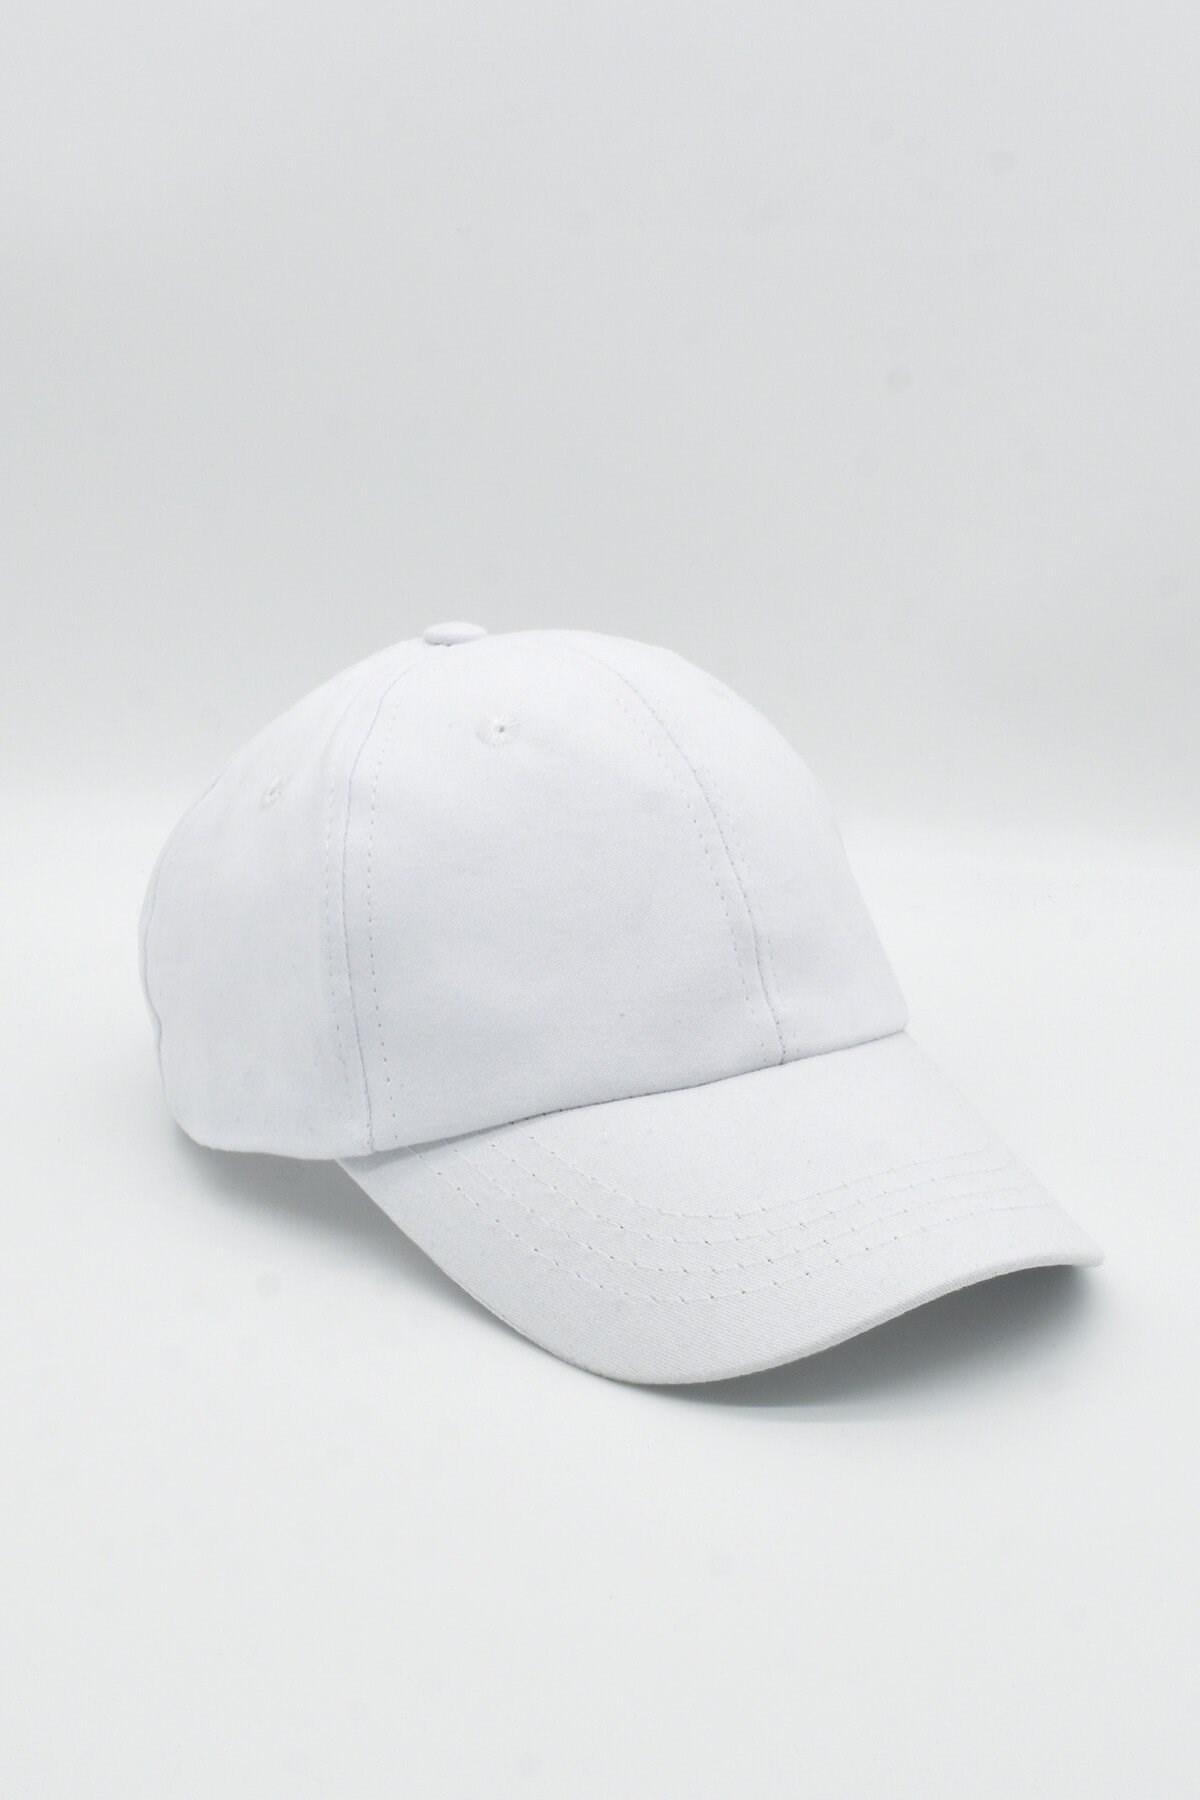 Külah Kadın %100 Pamuk Beyaz Cap Beyzbol Şapkası KLH7023